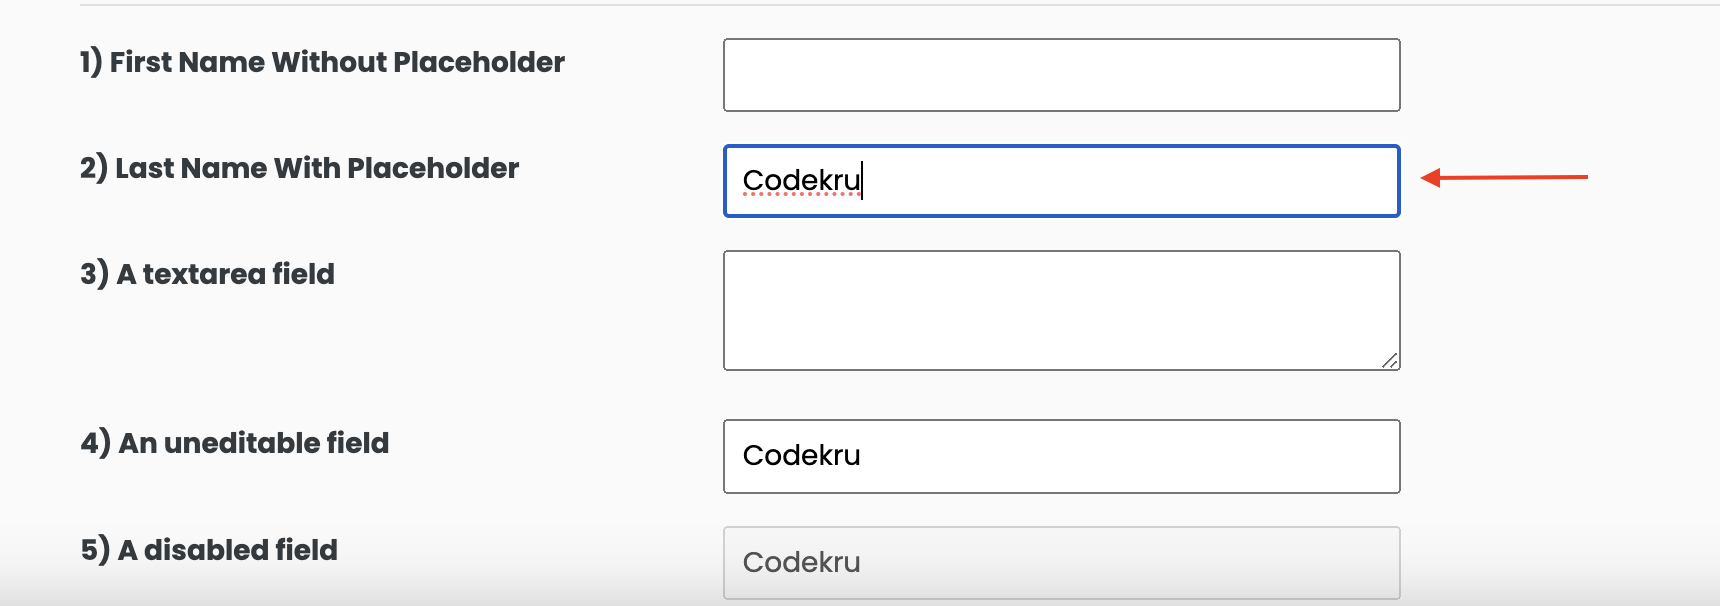 Typing "Codekru" in an element using type() method